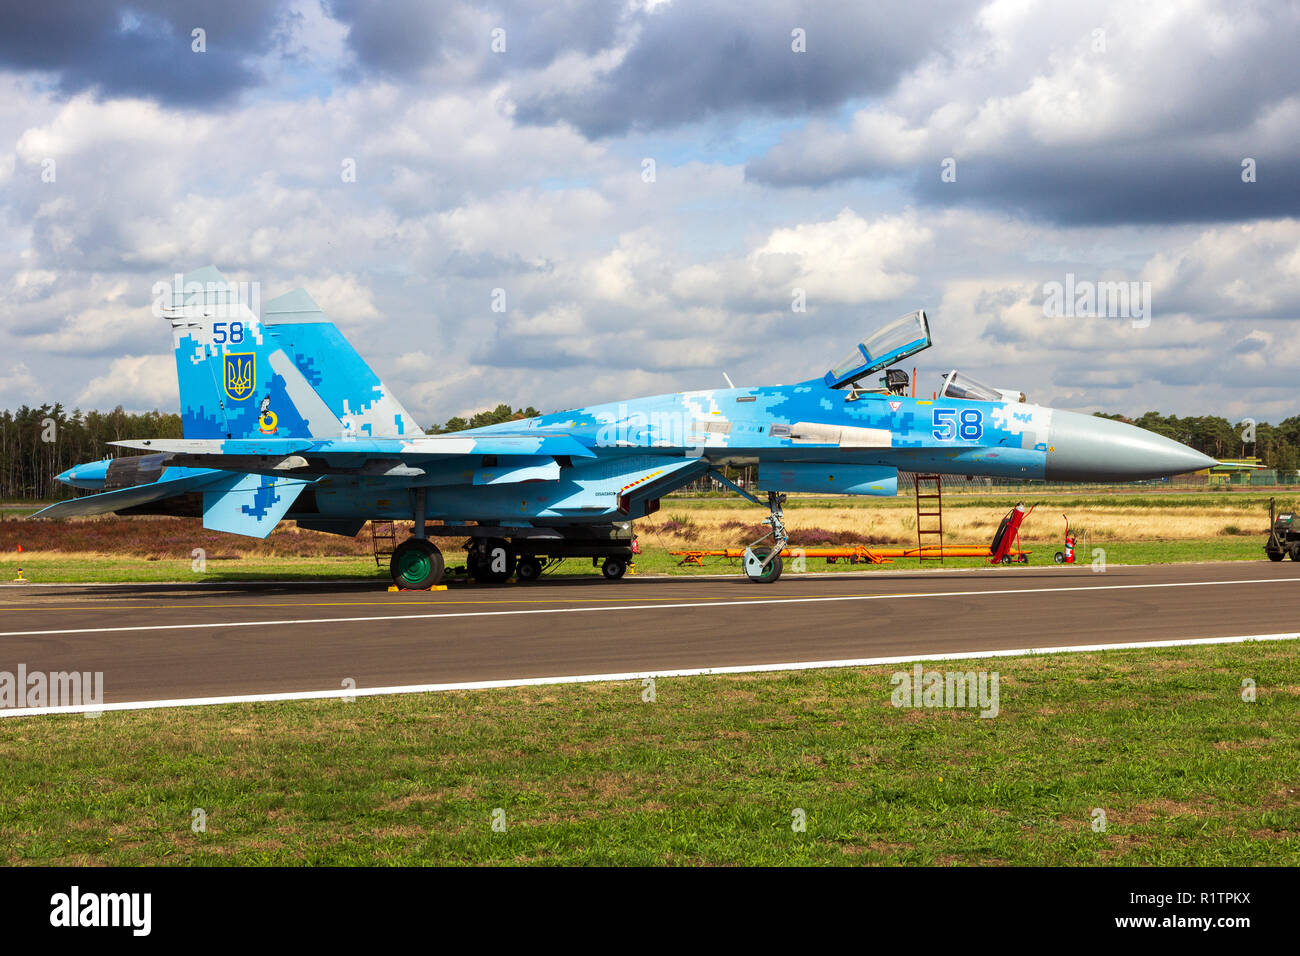 KLEINE BROGEL, BELGIQUE - SEP 8, 2018 : l'Armée de l'air ukrainienne Sukhoi Su-27 FLANKER fighter jet avion sur le tarmac de la base aérienne d'Oostende. Banque D'Images